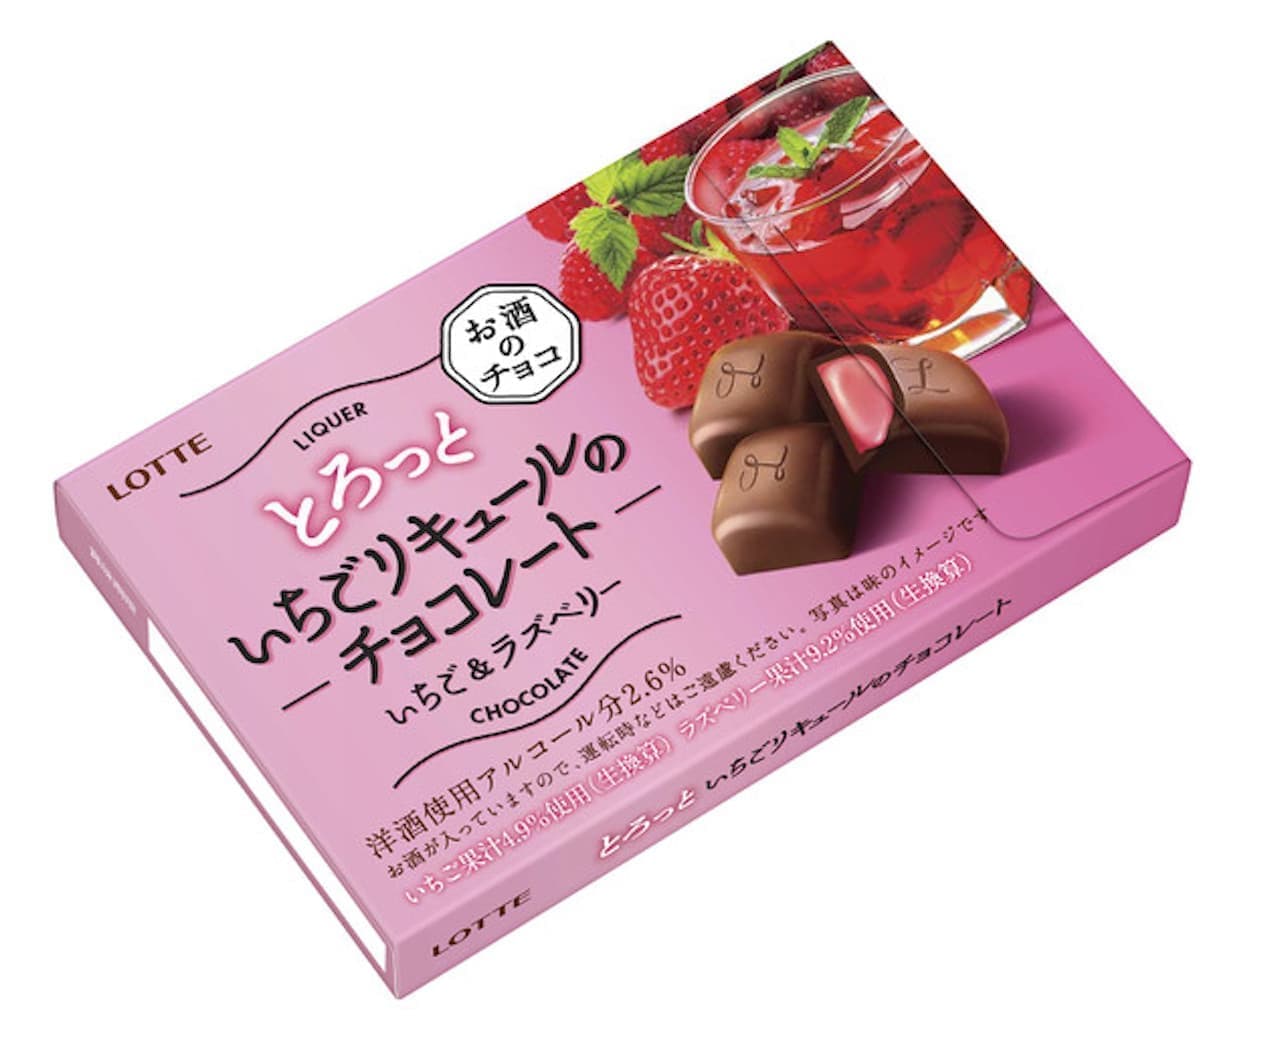 Lotte "Chocolate of Torotto Ichigo Liqueur"